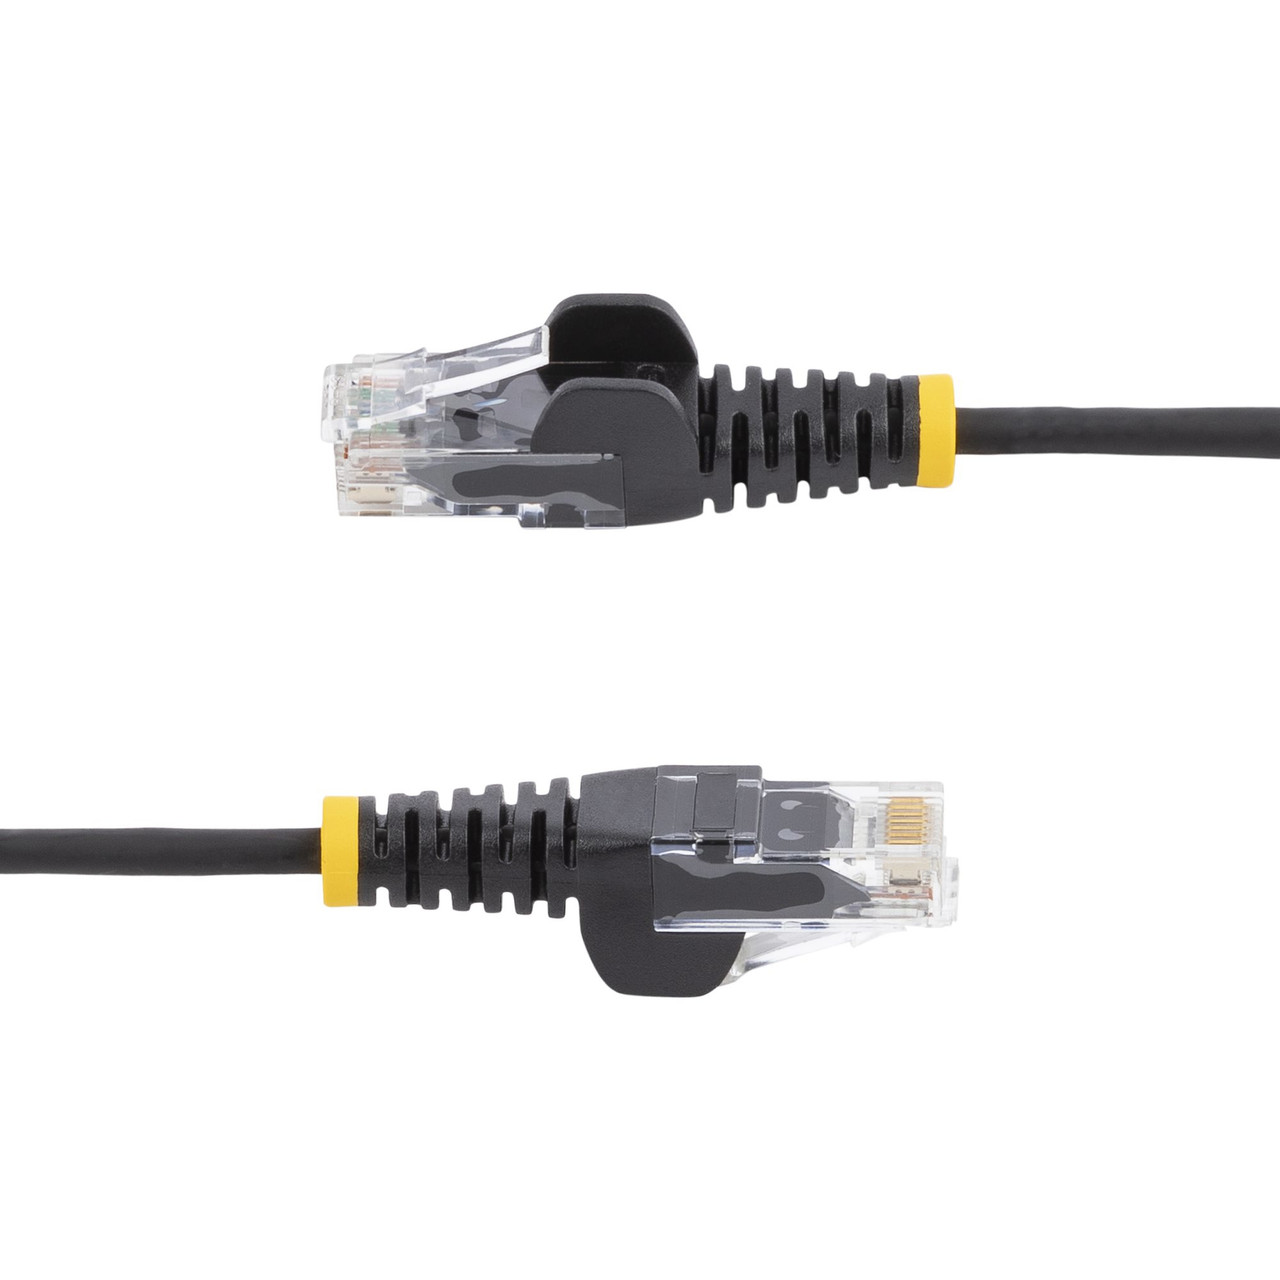 StarTech.com 1.5 m CAT6 Cable - Slim - Snagless RJ45 Connectors - Black